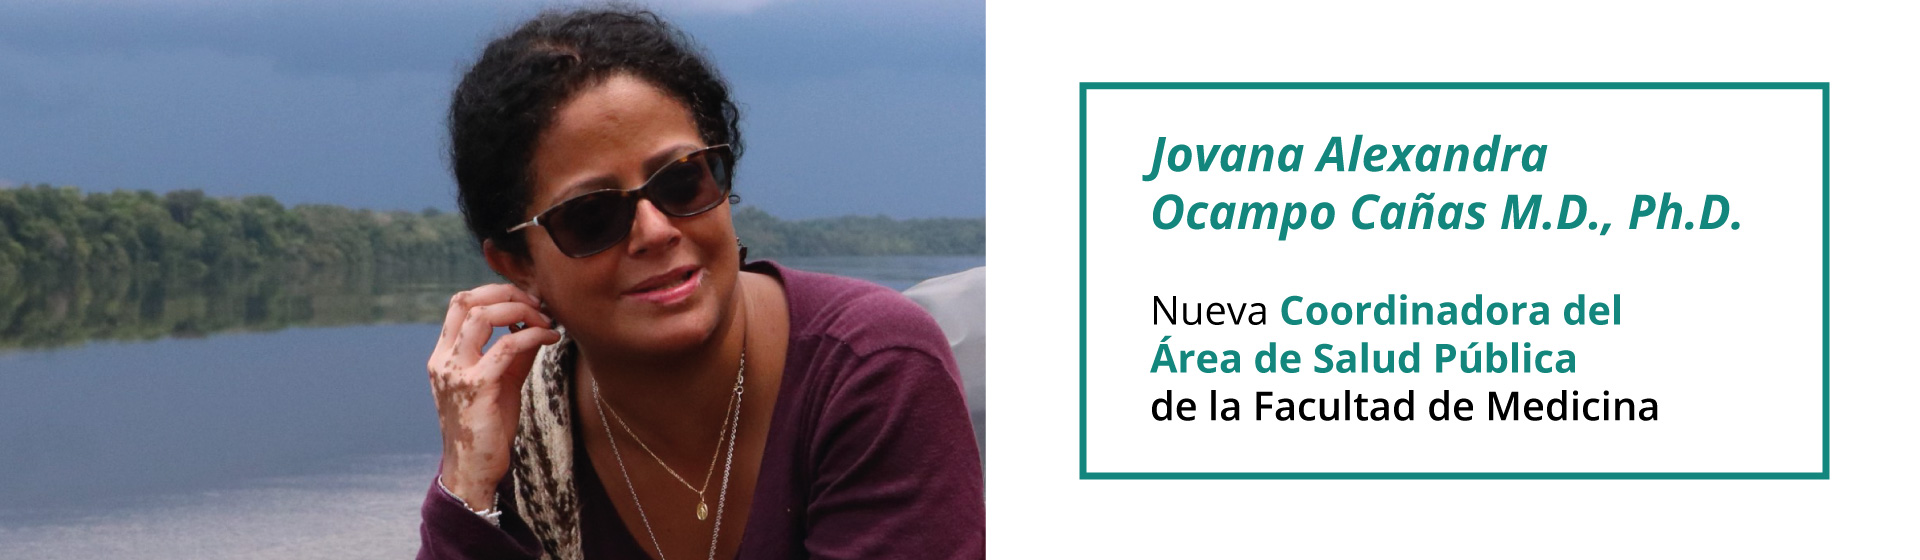 Nueva coordinadora de Salud Pública, Jovana Ocampo